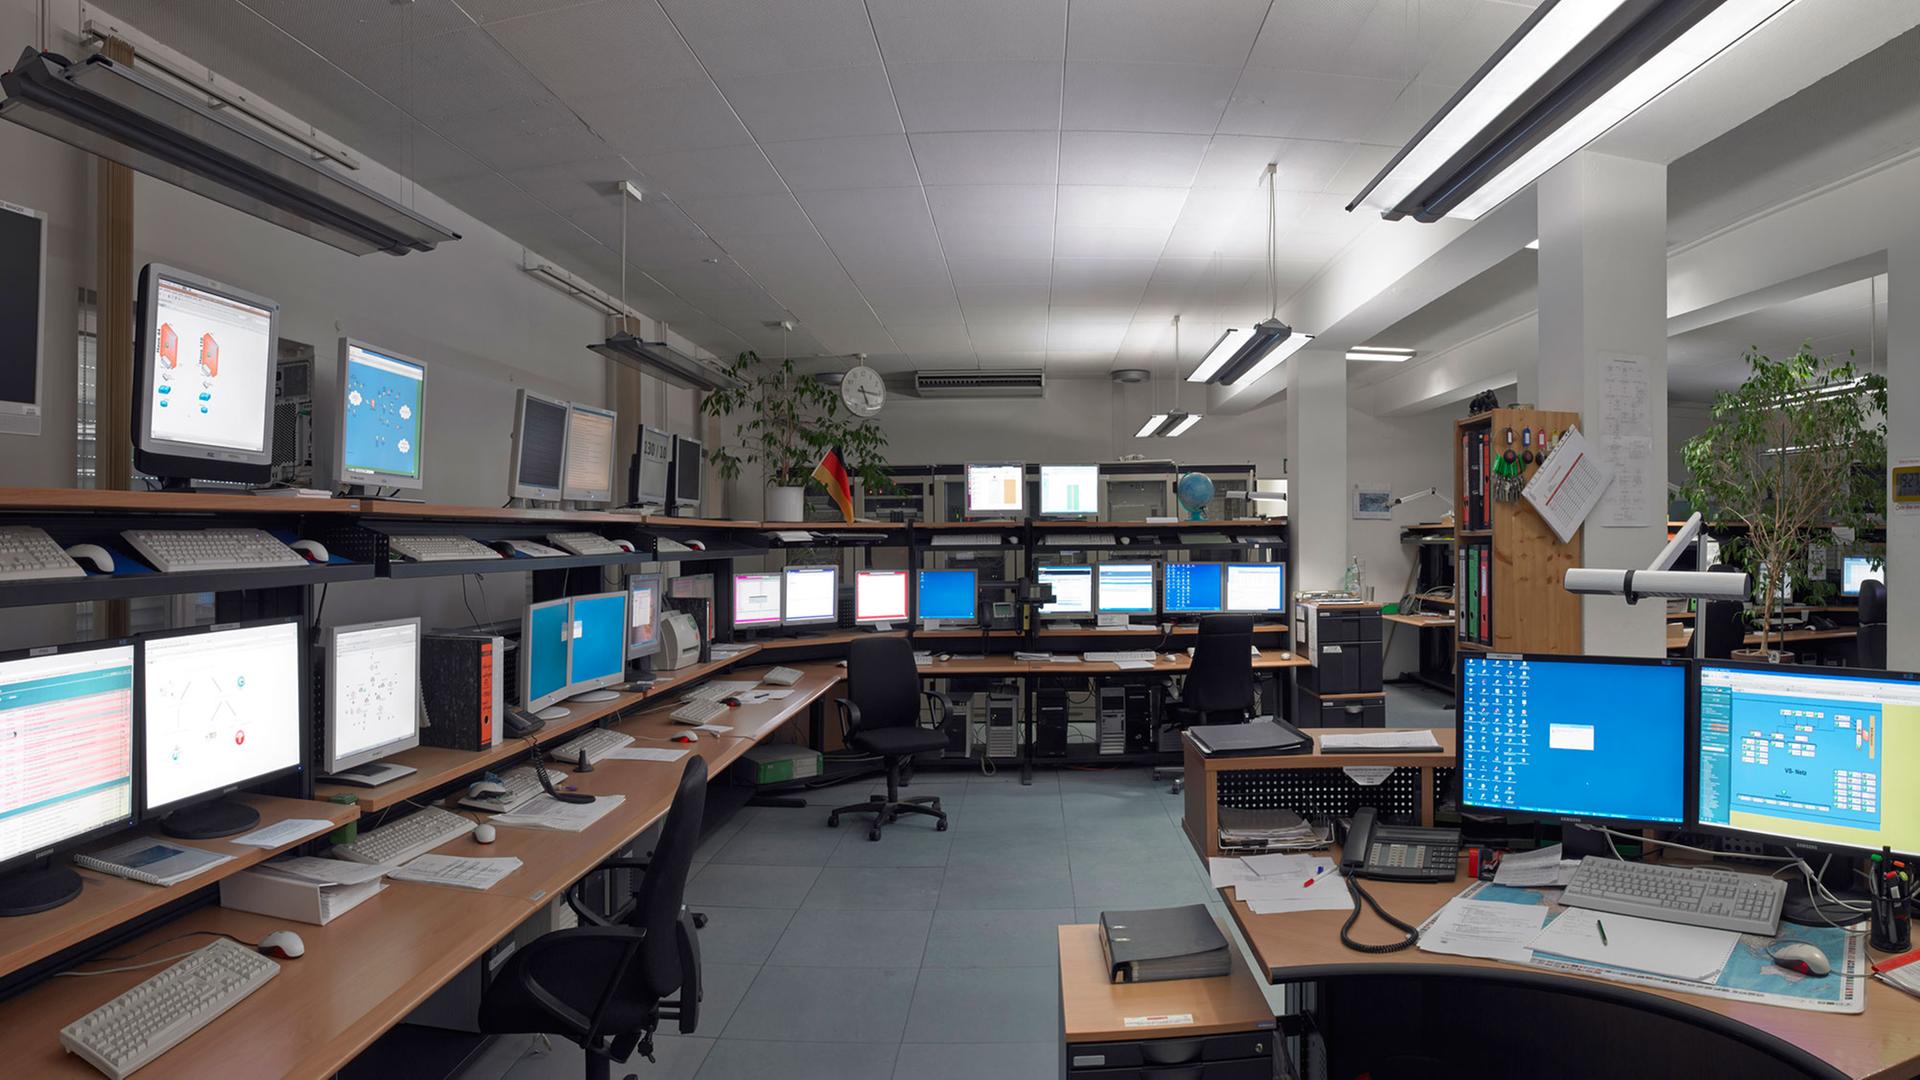 Die Kommunikationszentrale des BND in Pullach, in der unter anderem die elektronische Anbindung aller in- und ausländischen Auslandsdienststellen des BND stattfindet: Zahlreiche Computerarbeitsplätze sind in einem fensterlosen Raum zu sehen.